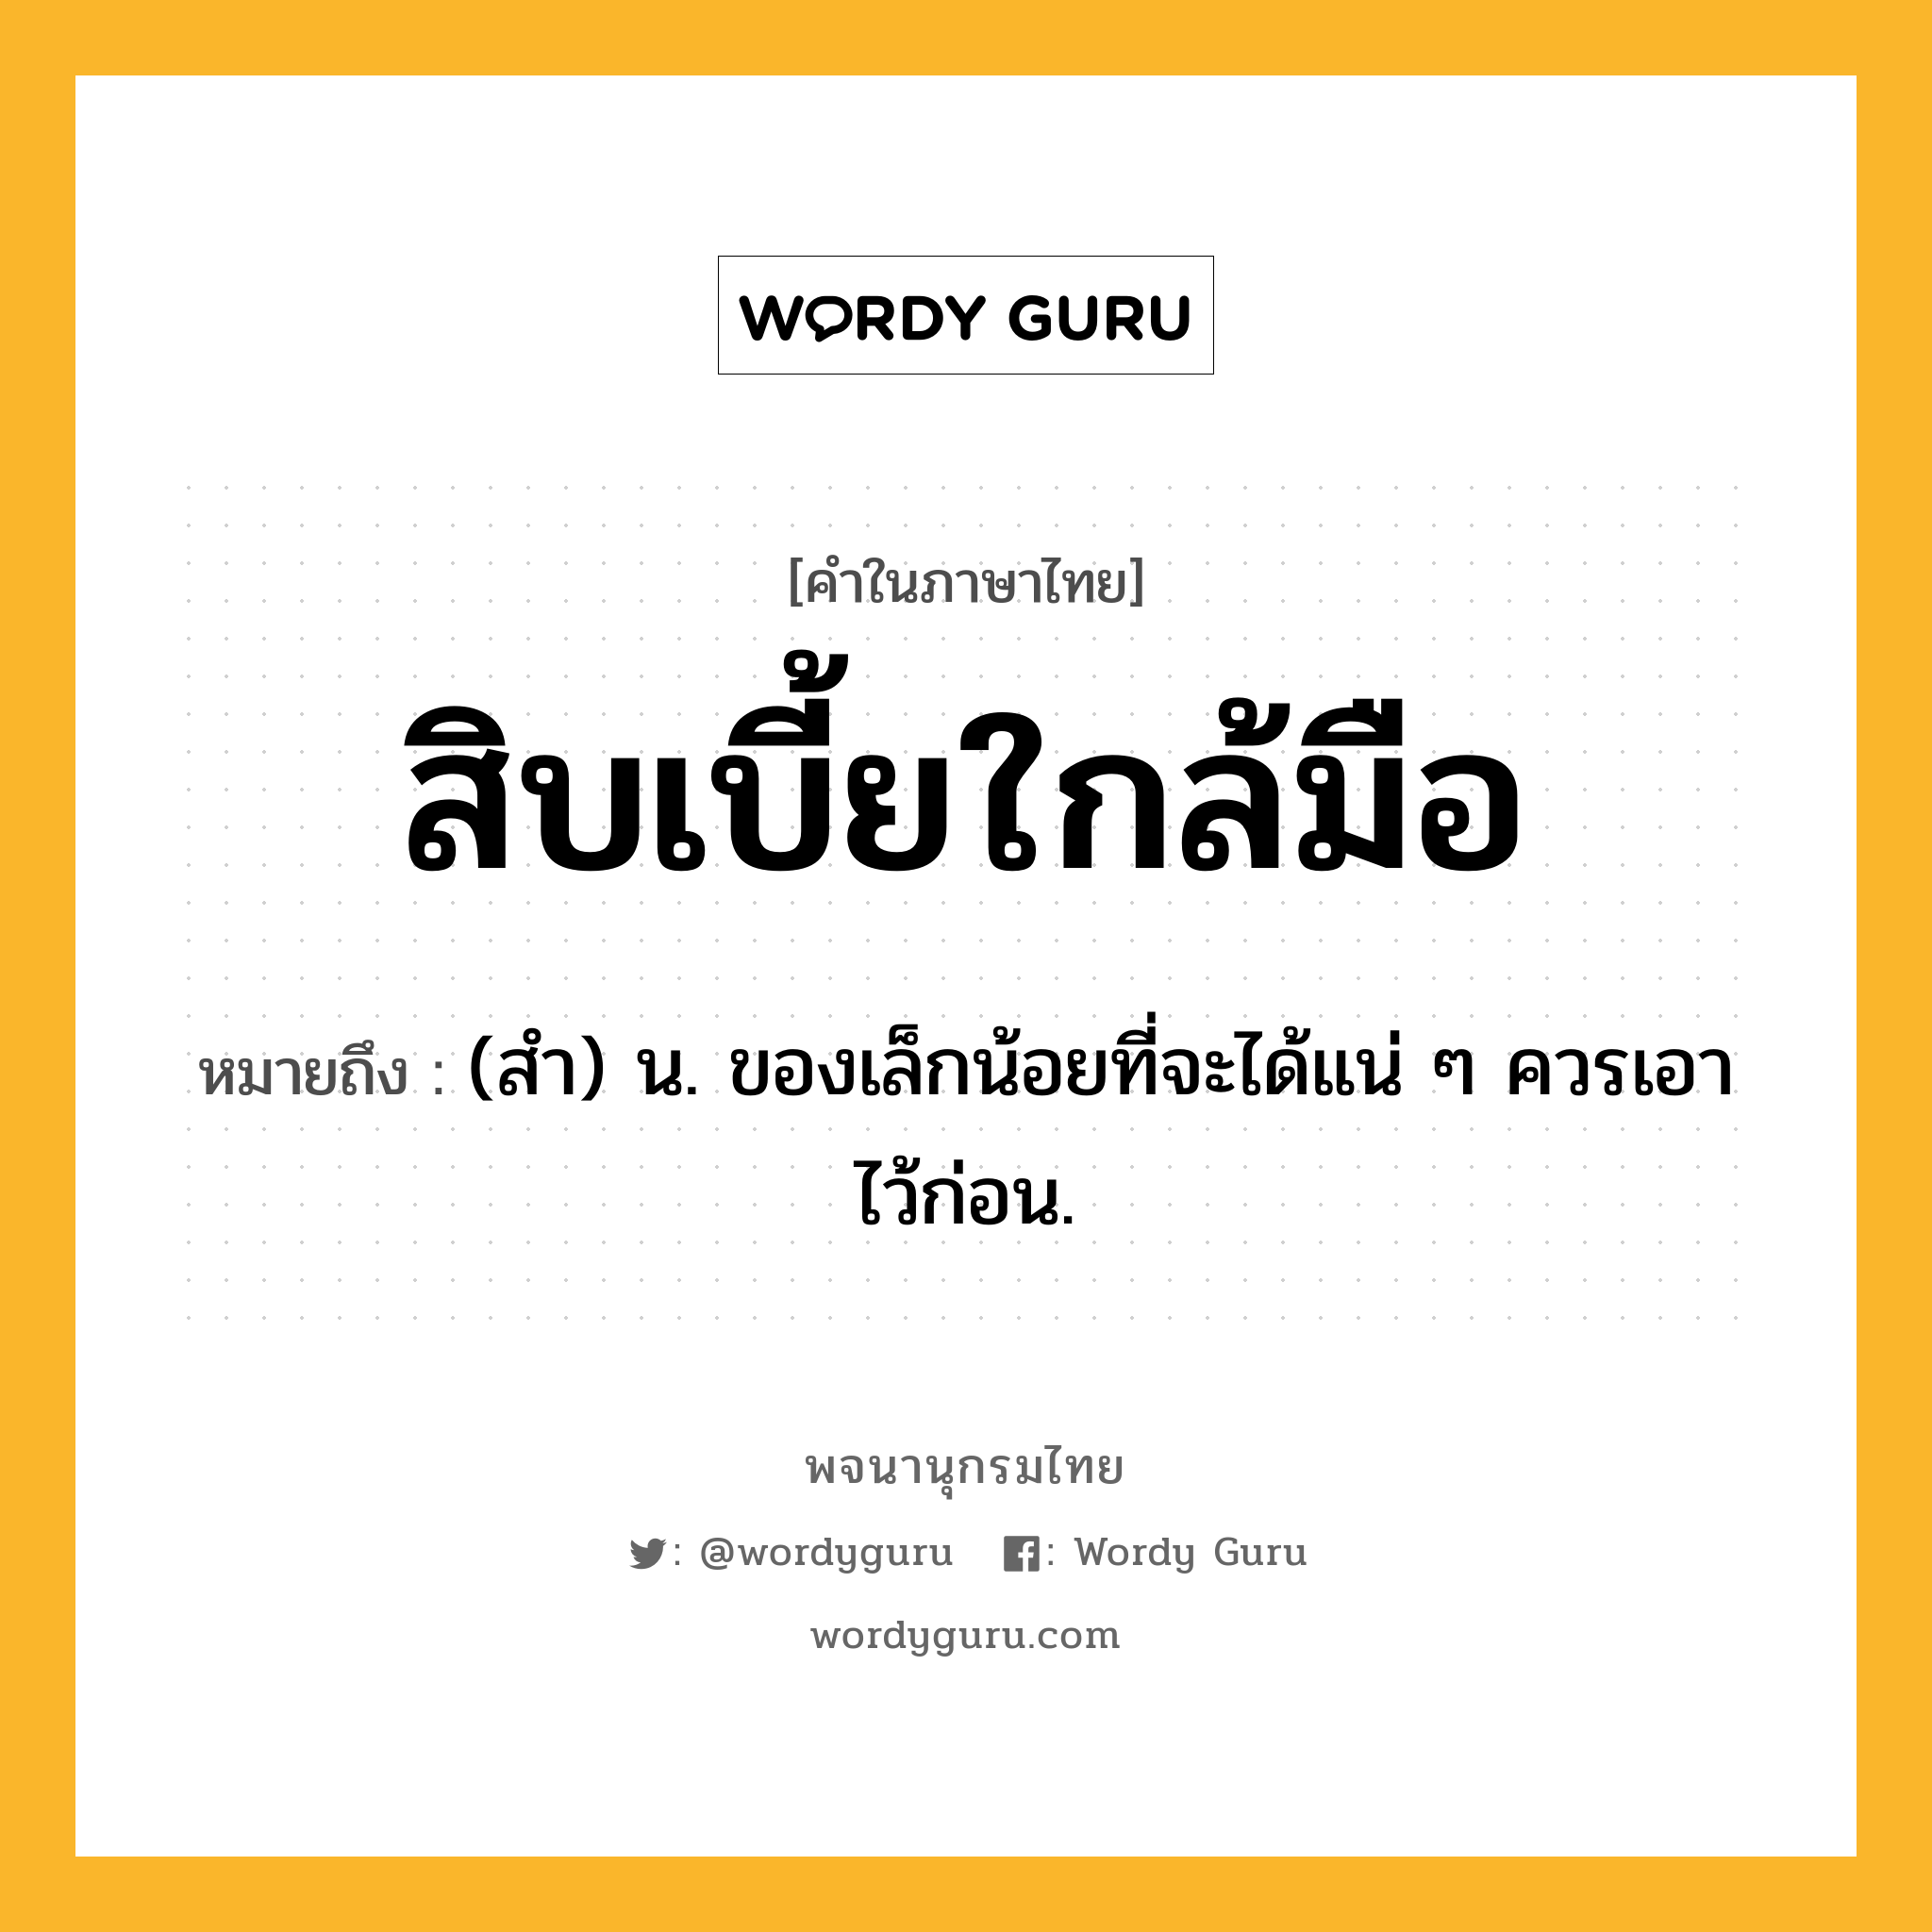 สิบเบี้ยใกล้มือ หมายถึงอะไร?, คำในภาษาไทย สิบเบี้ยใกล้มือ หมายถึง (สํา) น. ของเล็กน้อยที่จะได้แน่ ๆ ควรเอาไว้ก่อน.